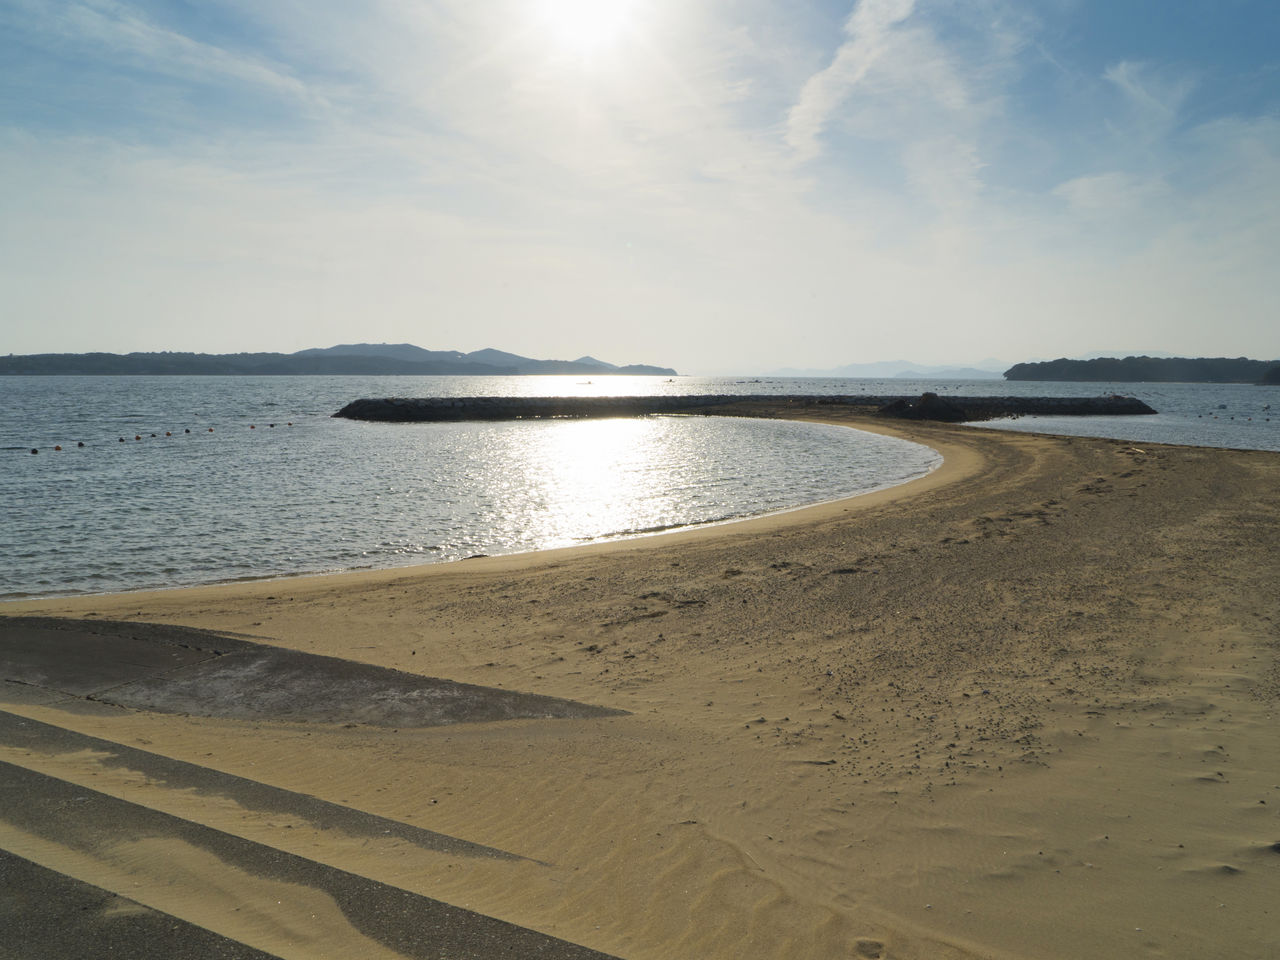 La plage de Masakijima : vous aurez l’impression de vous trouver dans le sud du Japon. Étant située au centre de la baie, les vagues y sont peu élevées.